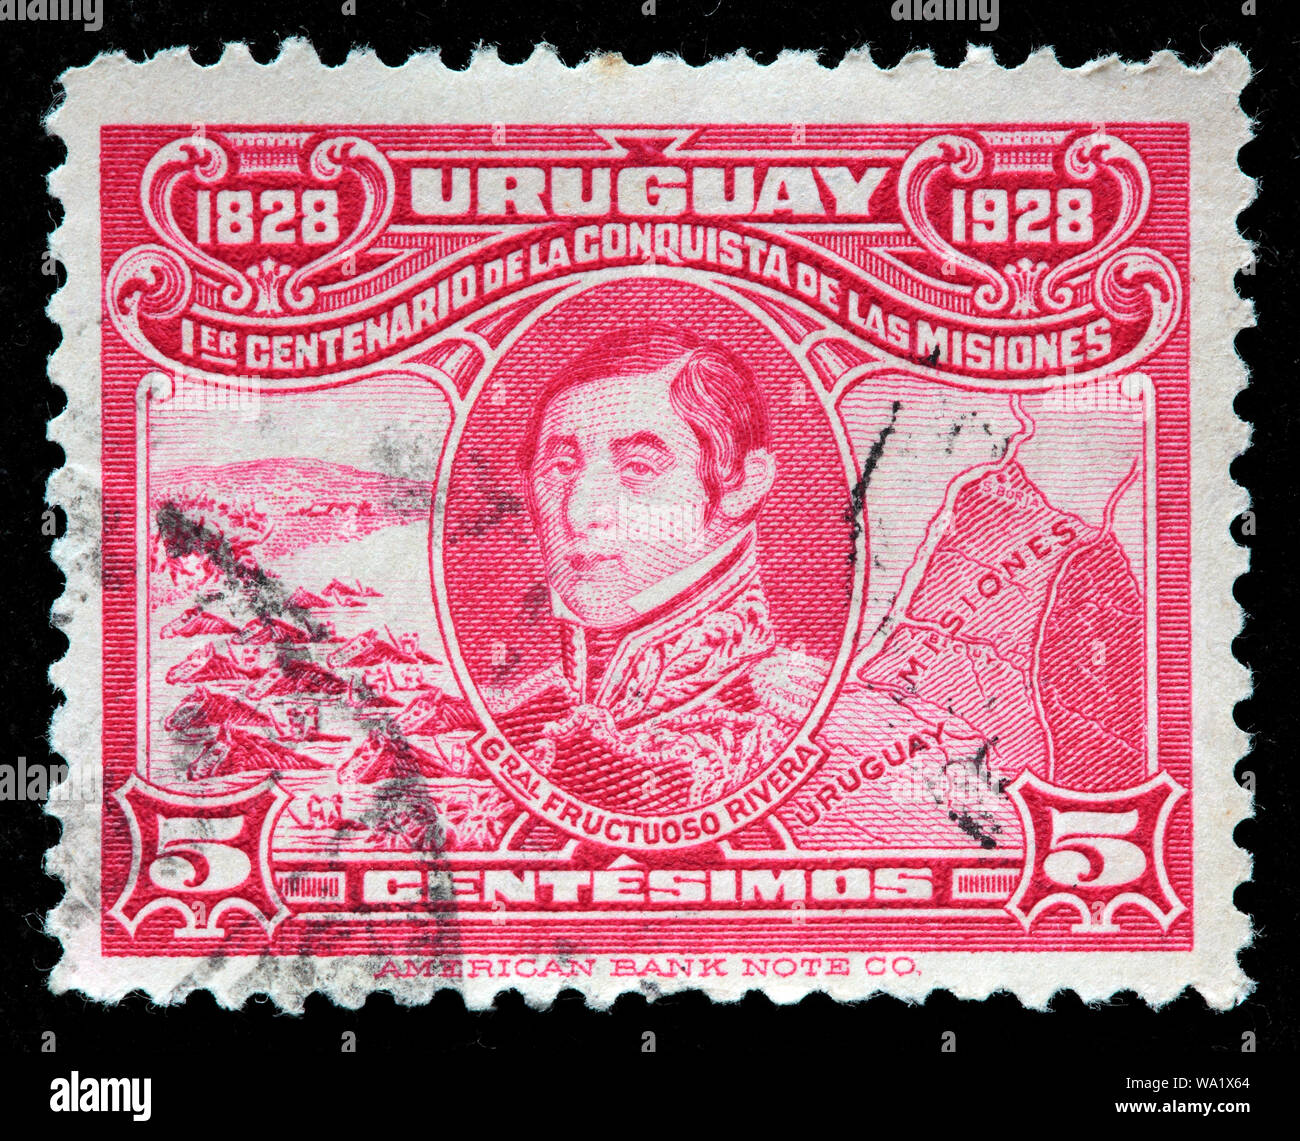 Fructuoso Rivera (1784-1854), l'Uruguayen et carte de Misiones, timbre-poste, l'Uruguay, 1928 Banque D'Images